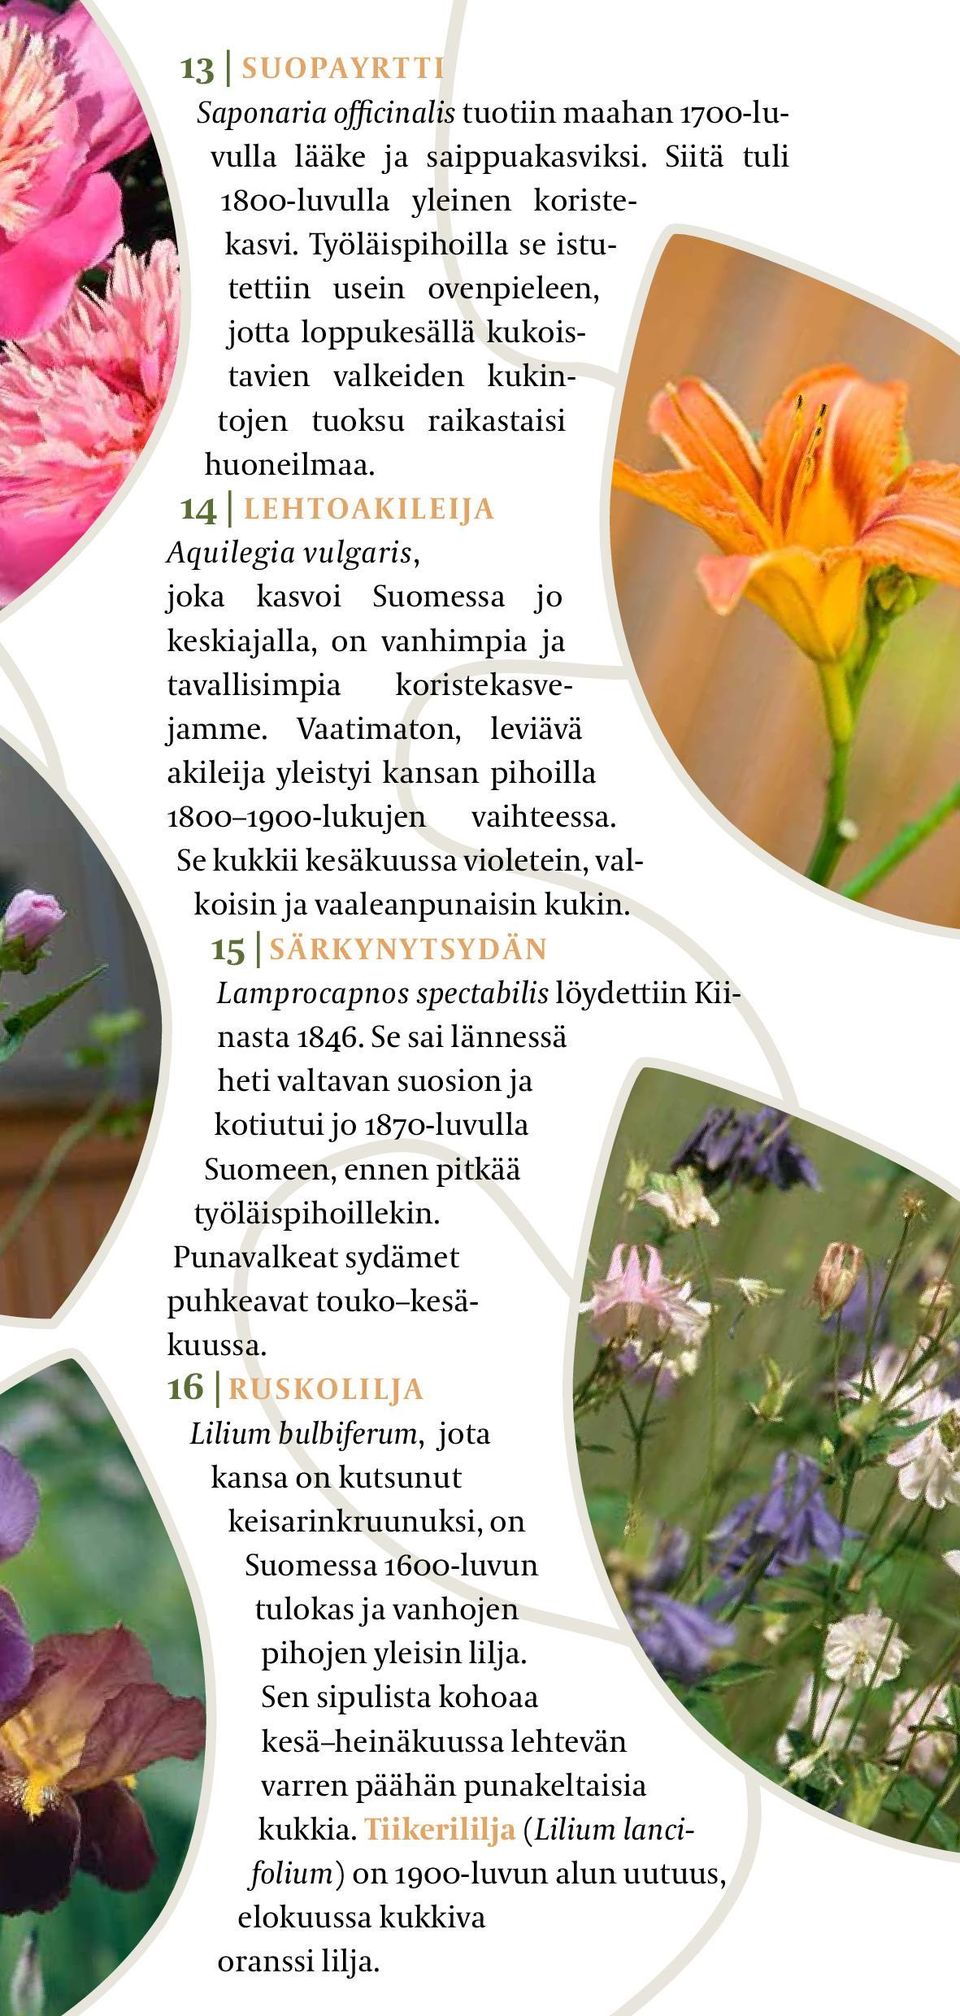 14 LEHTOAKILEIJA Aquilegia vulgaris, joka kasvoi Suomessa jo keskiajalla, on vanhimpia ja tavallisimpia koristekasvejamme.